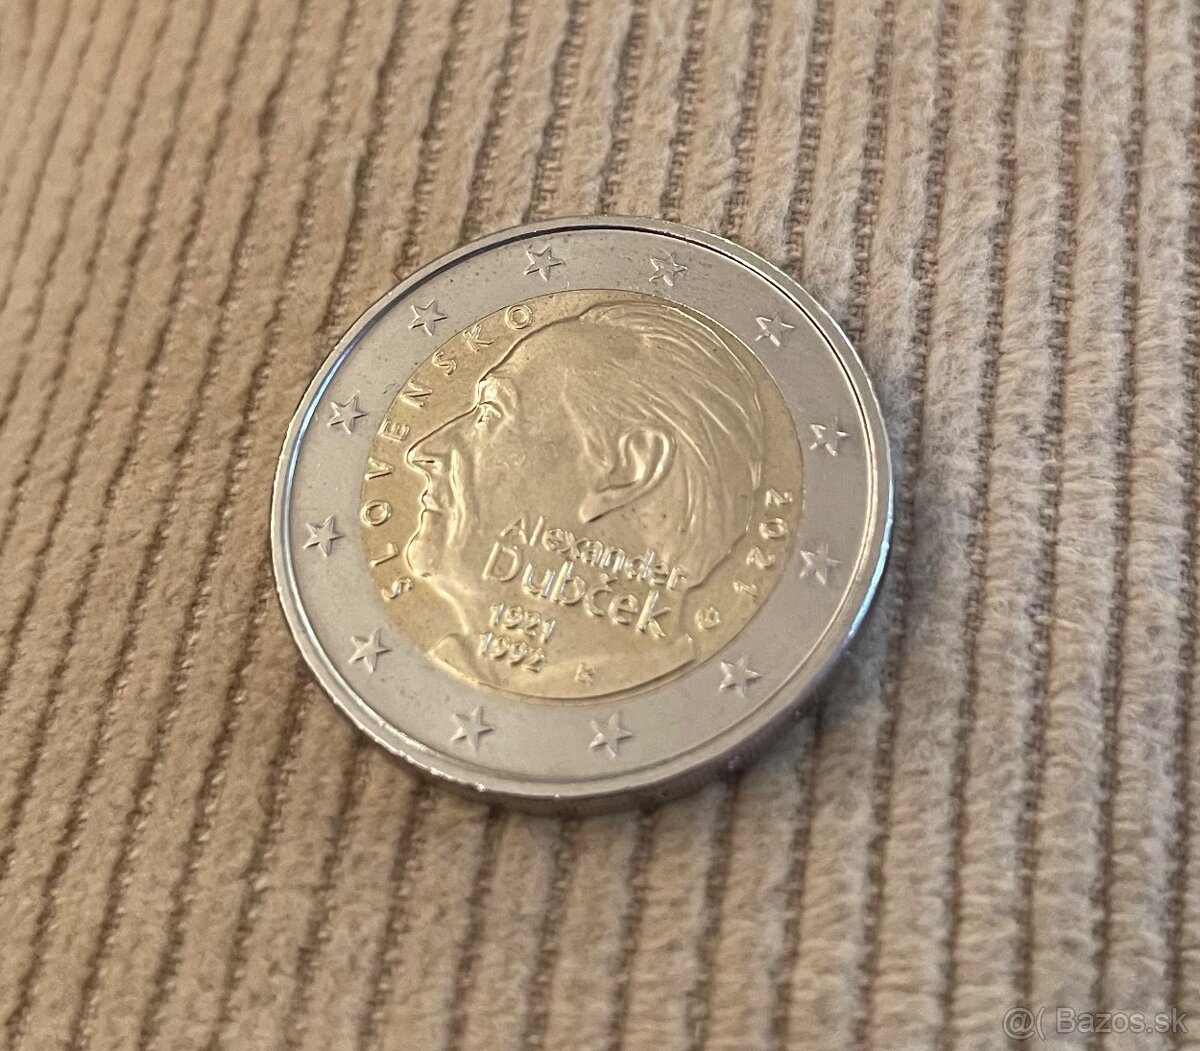 Pamätná 2 eurova minca Alexander Dubček 2021